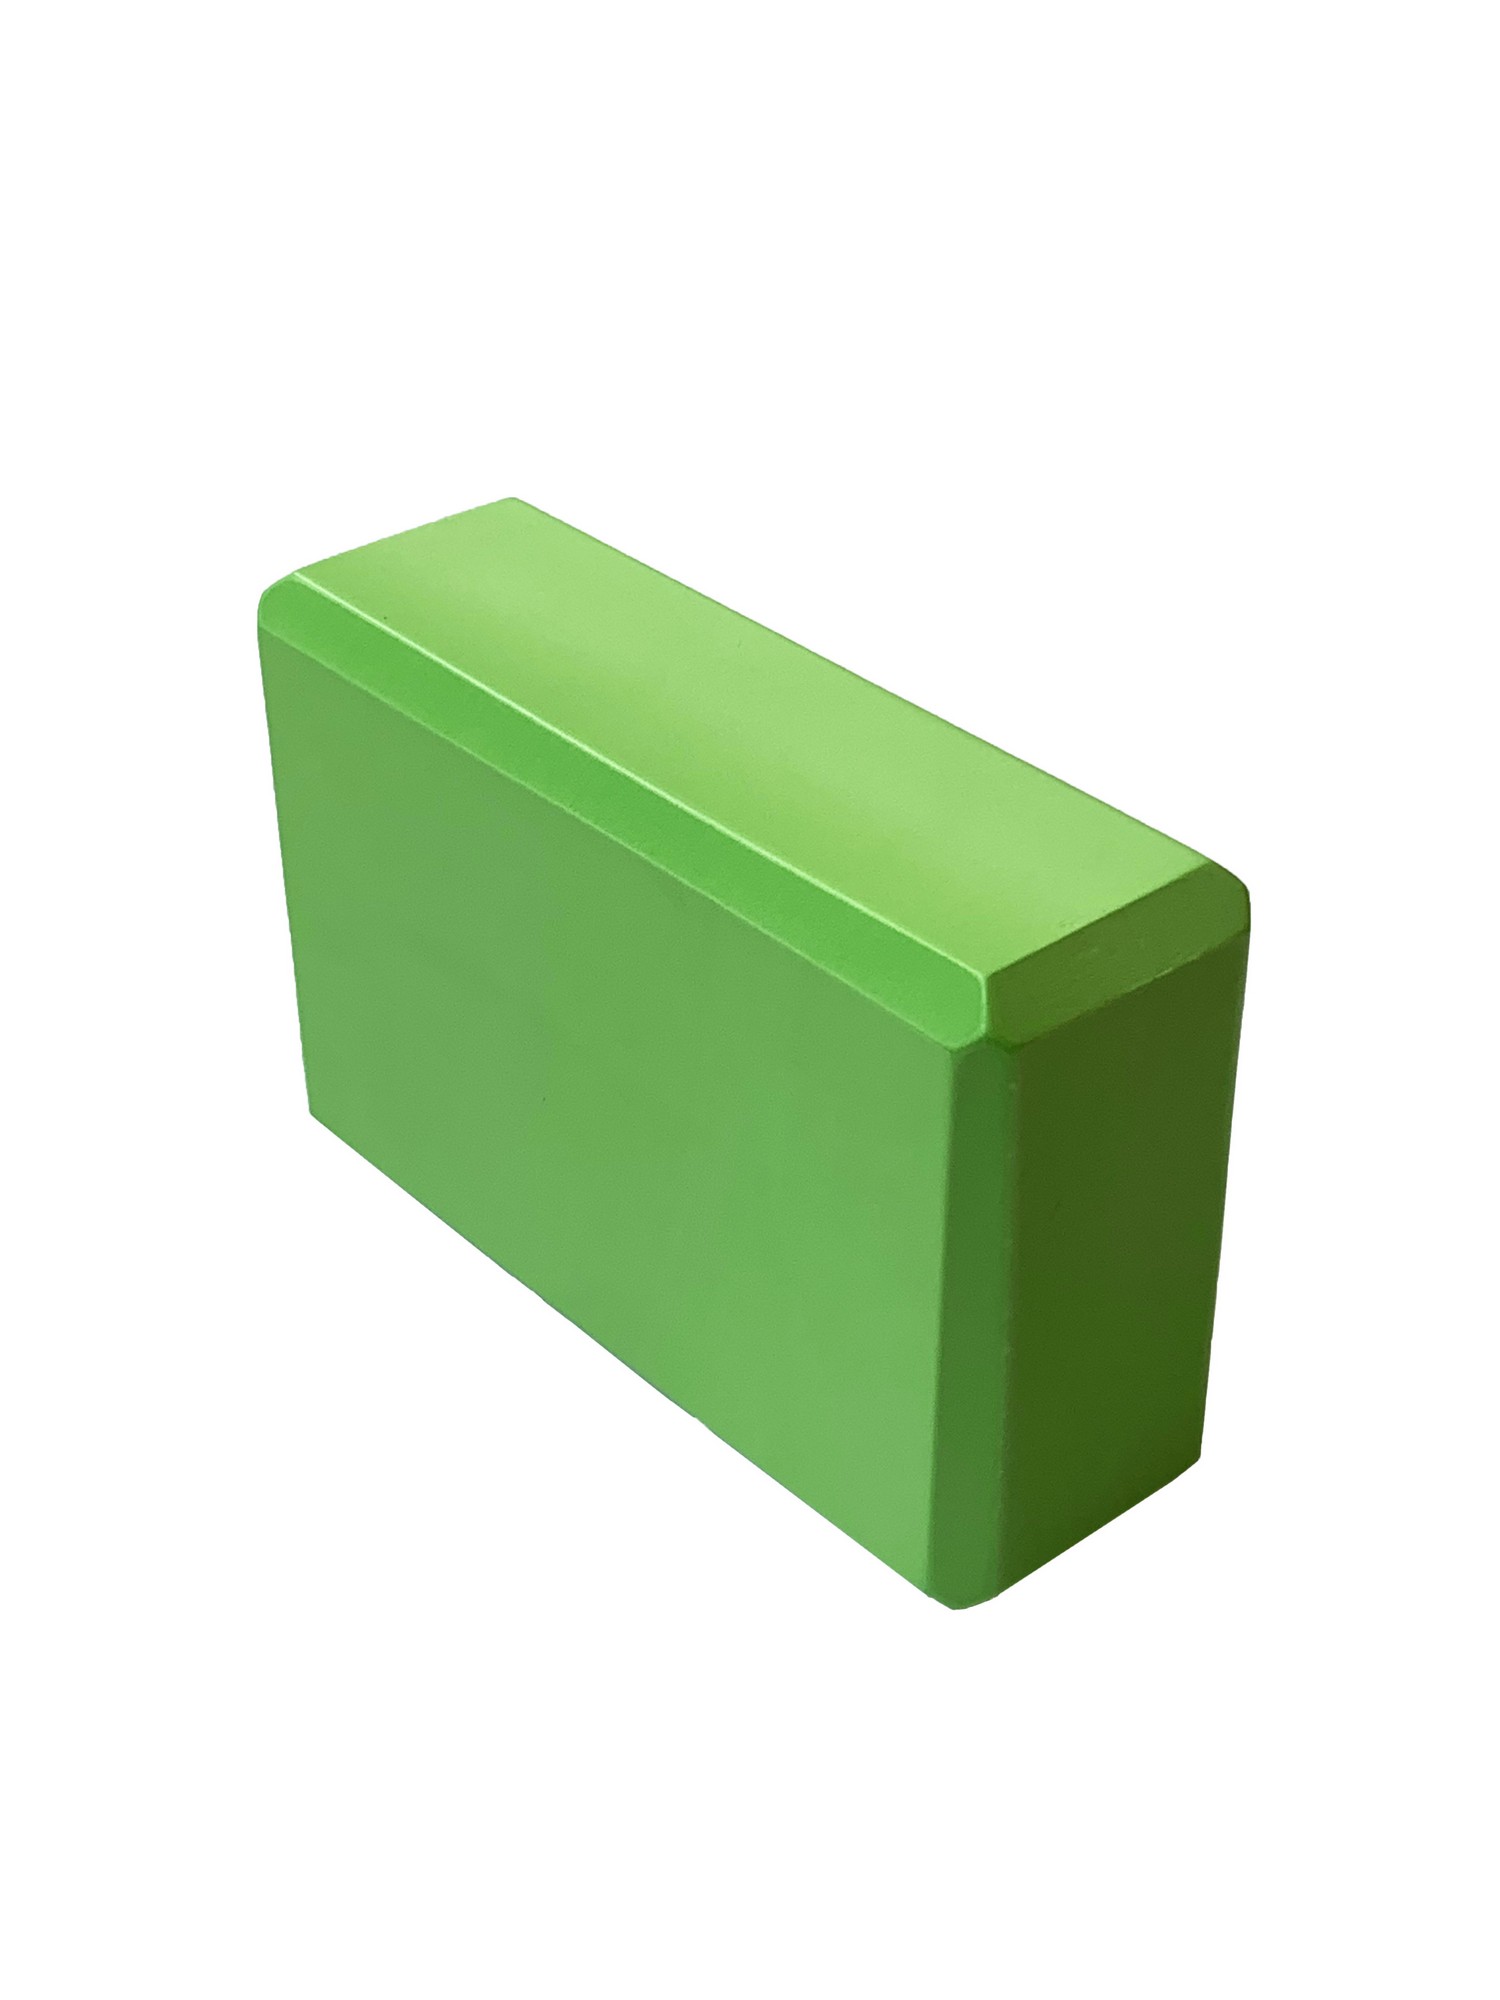 Йога блок Sportex полумягкий, из вспененного ЭВА 22,3х15х7,6 см E39131-41 зеленый